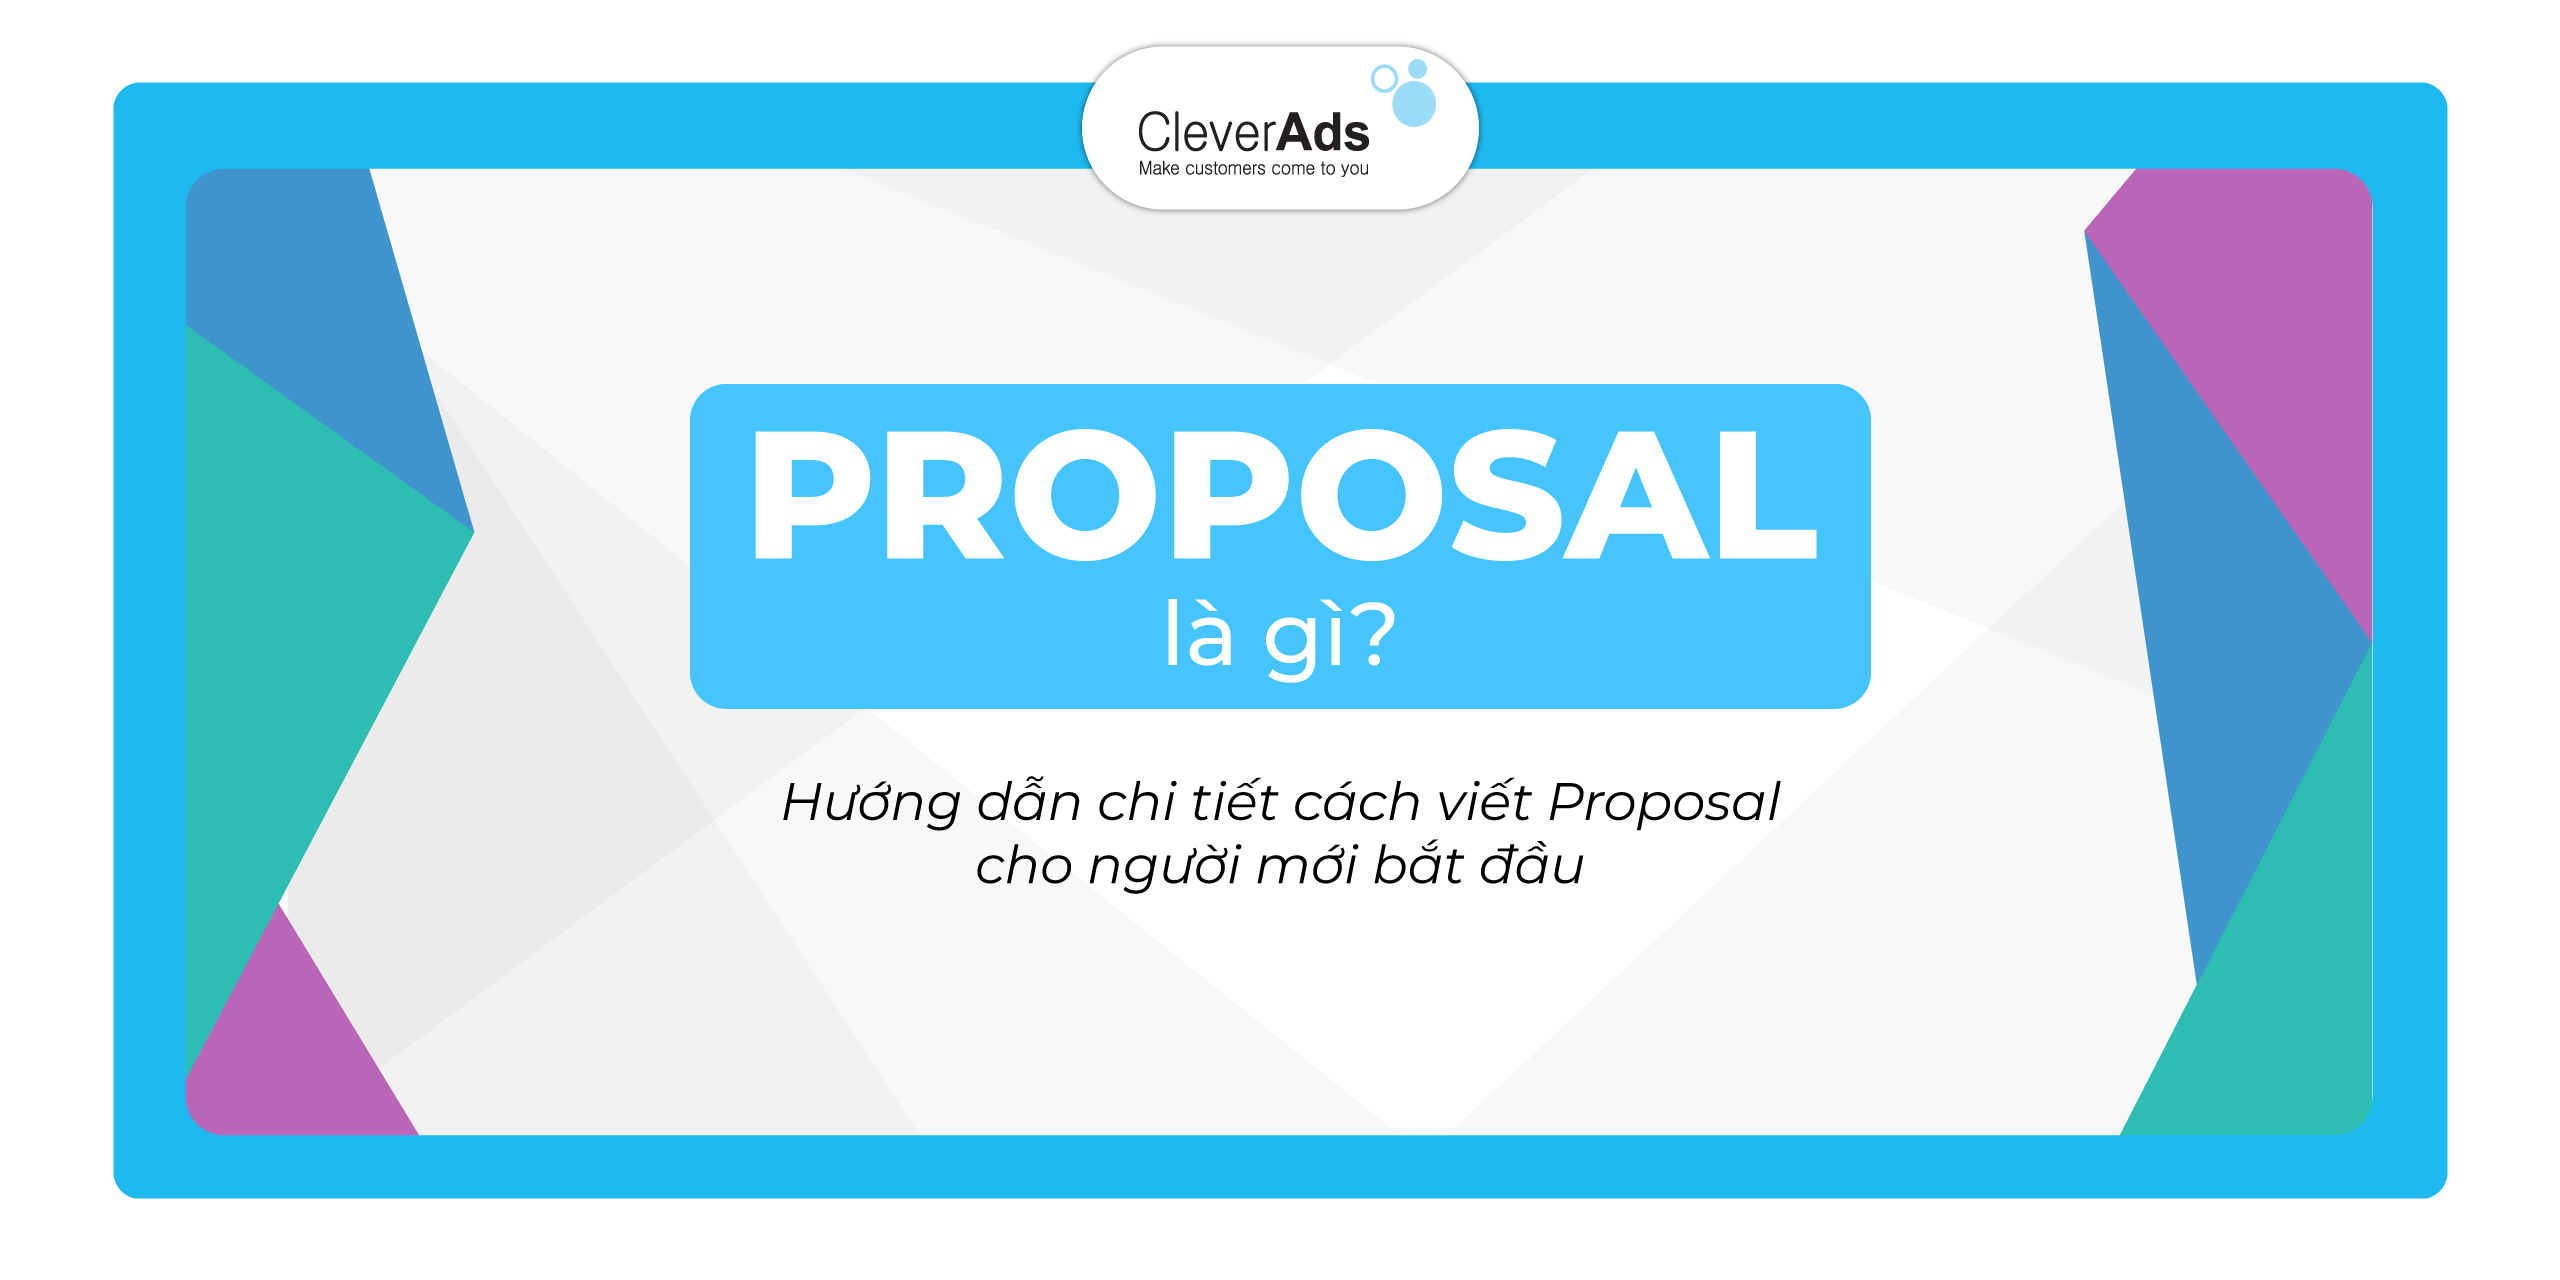 Proposal là gì? Hướng dẫn chi tiết cách viết Proposal cho người mới bắt đầu